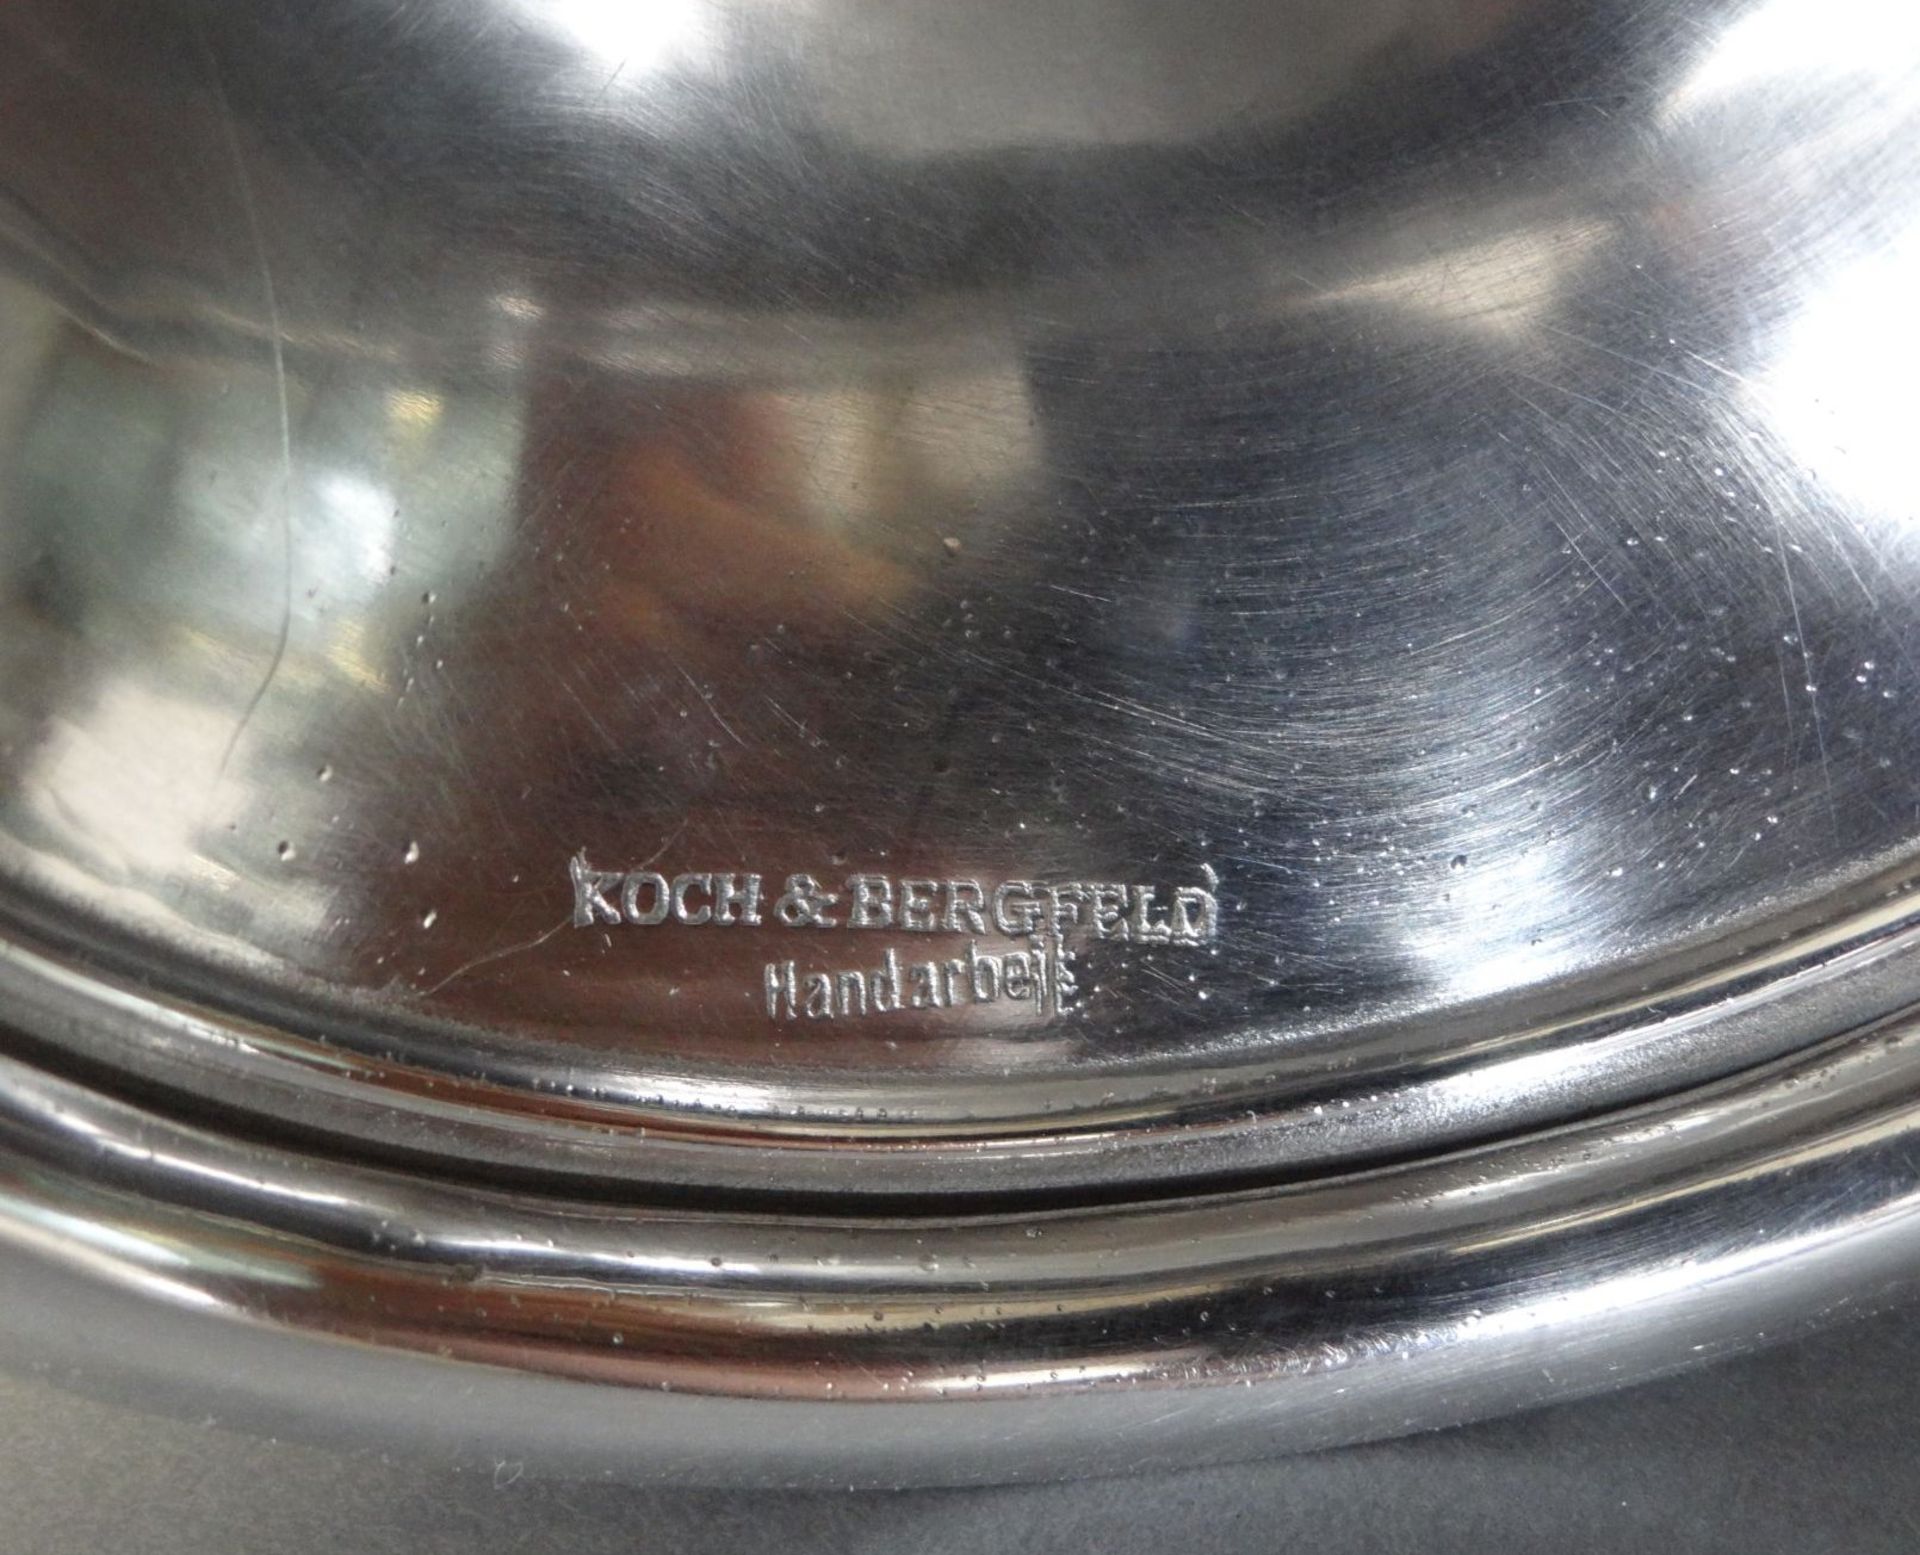 Silberpokal "Koch&Bergfeld" mit Freimaurer-Zeichen?, H-12,5 cm, 184 gr, Hammerschlagdekor - Bild 4 aus 4